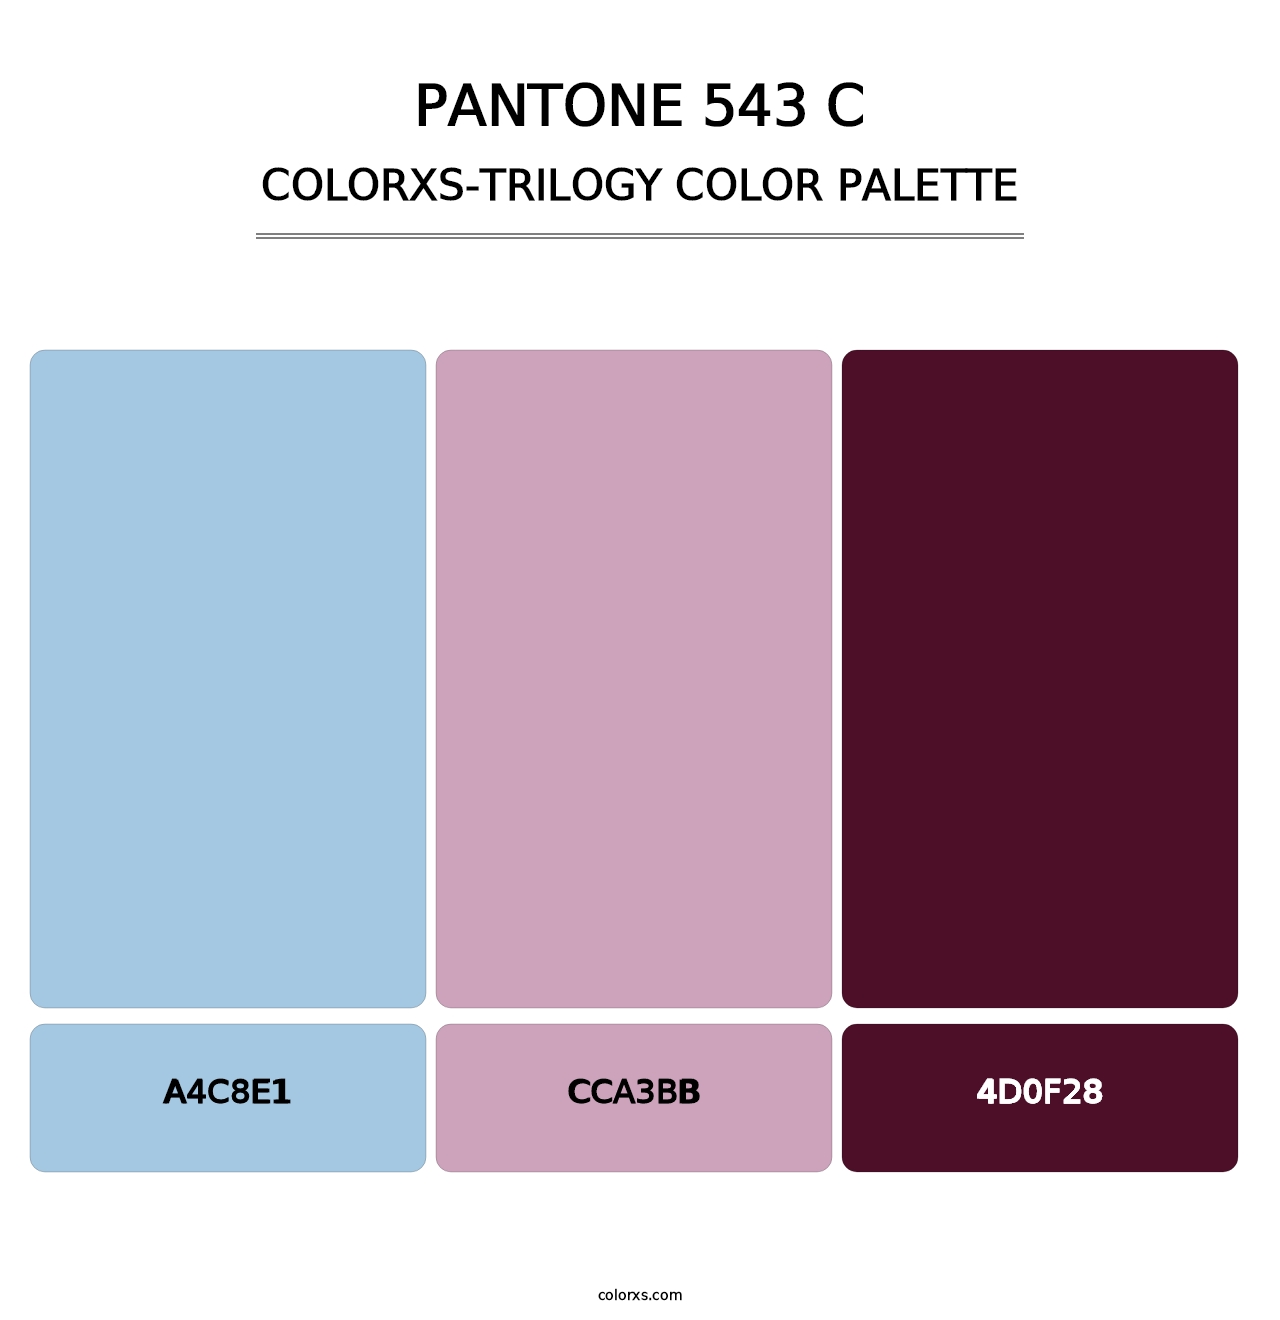 PANTONE 543 C - Colorxs Trilogy Palette